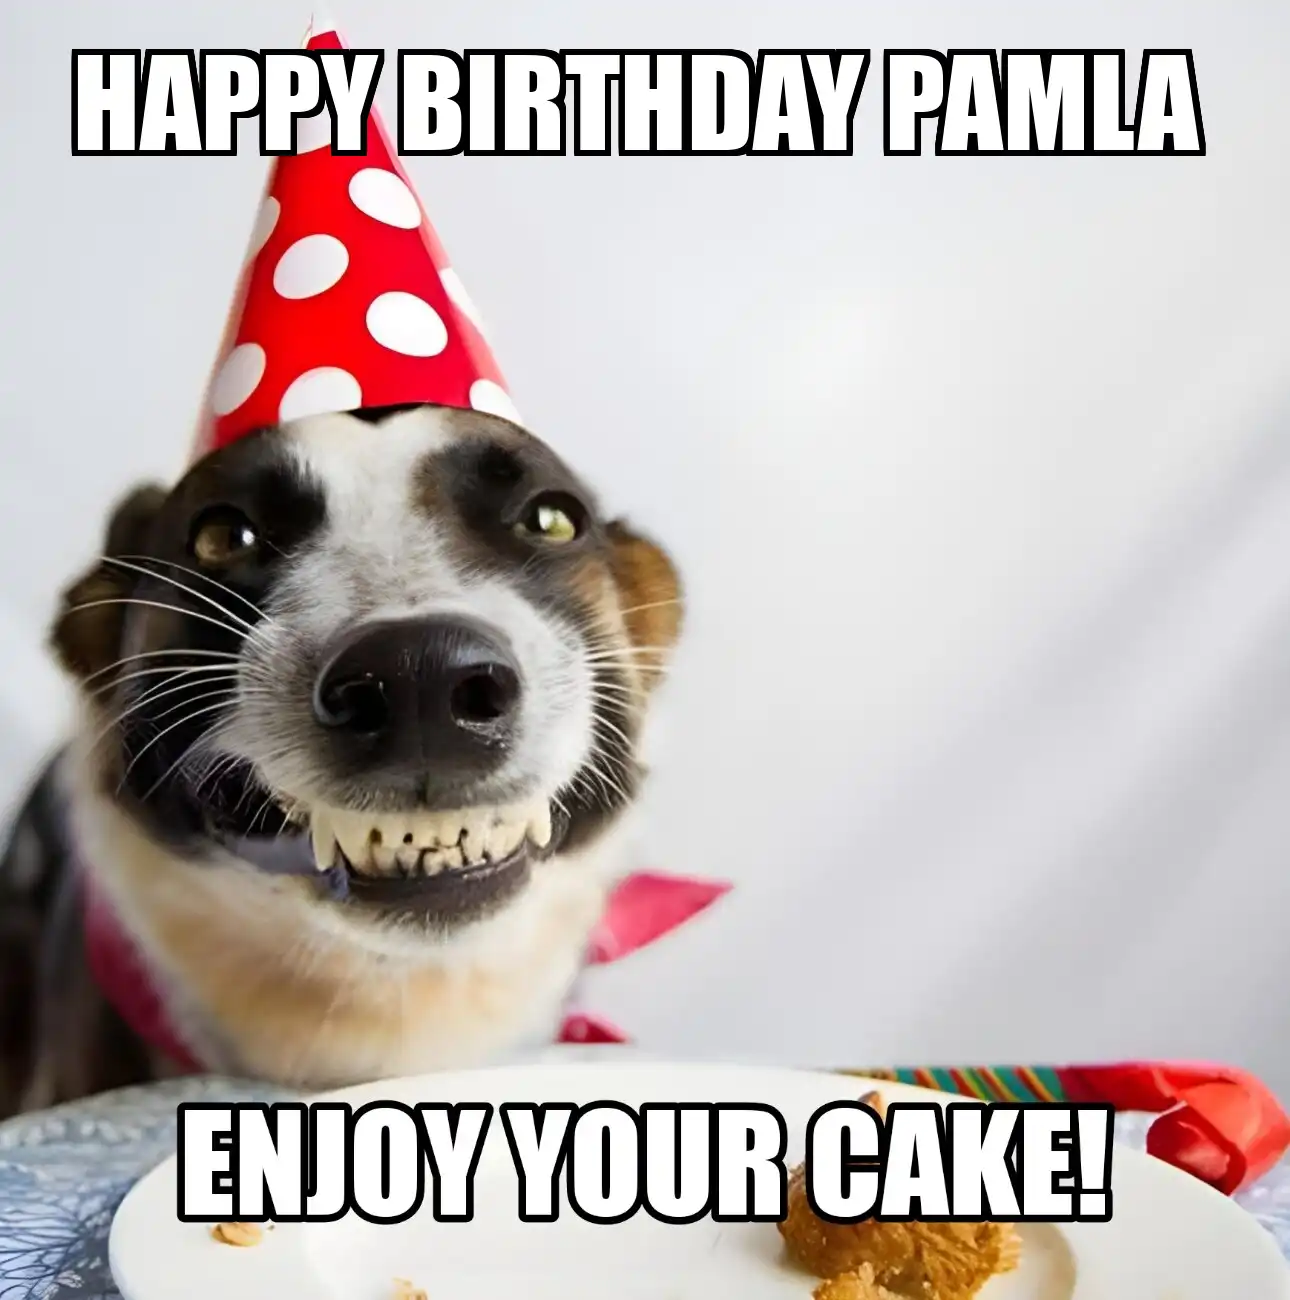 Happy Birthday Pamla Enjoy Your Cake Dog Meme